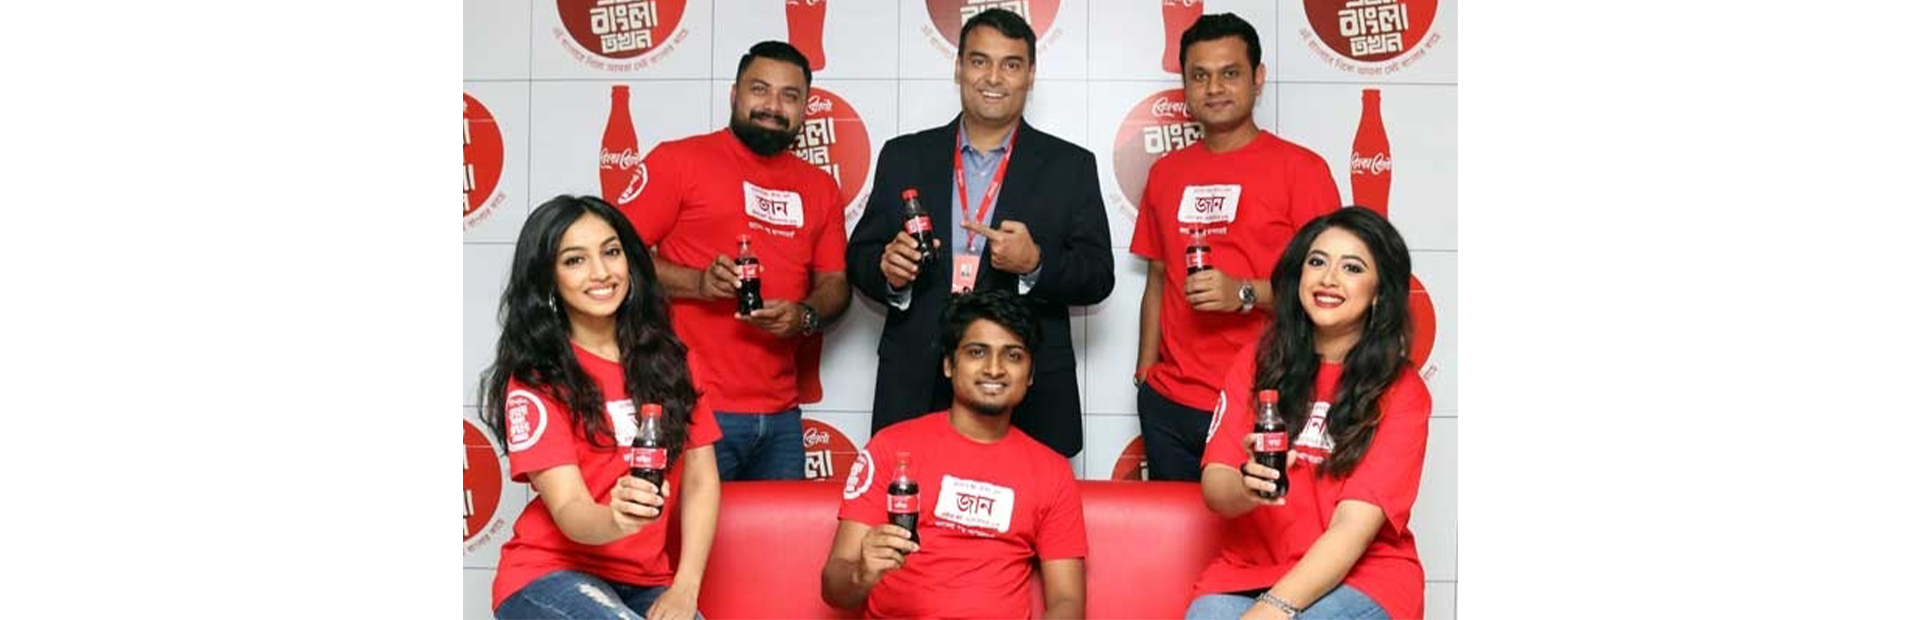 Coca-Cola launches “Bangla Ekhon, Bangla Tokhon” campaign